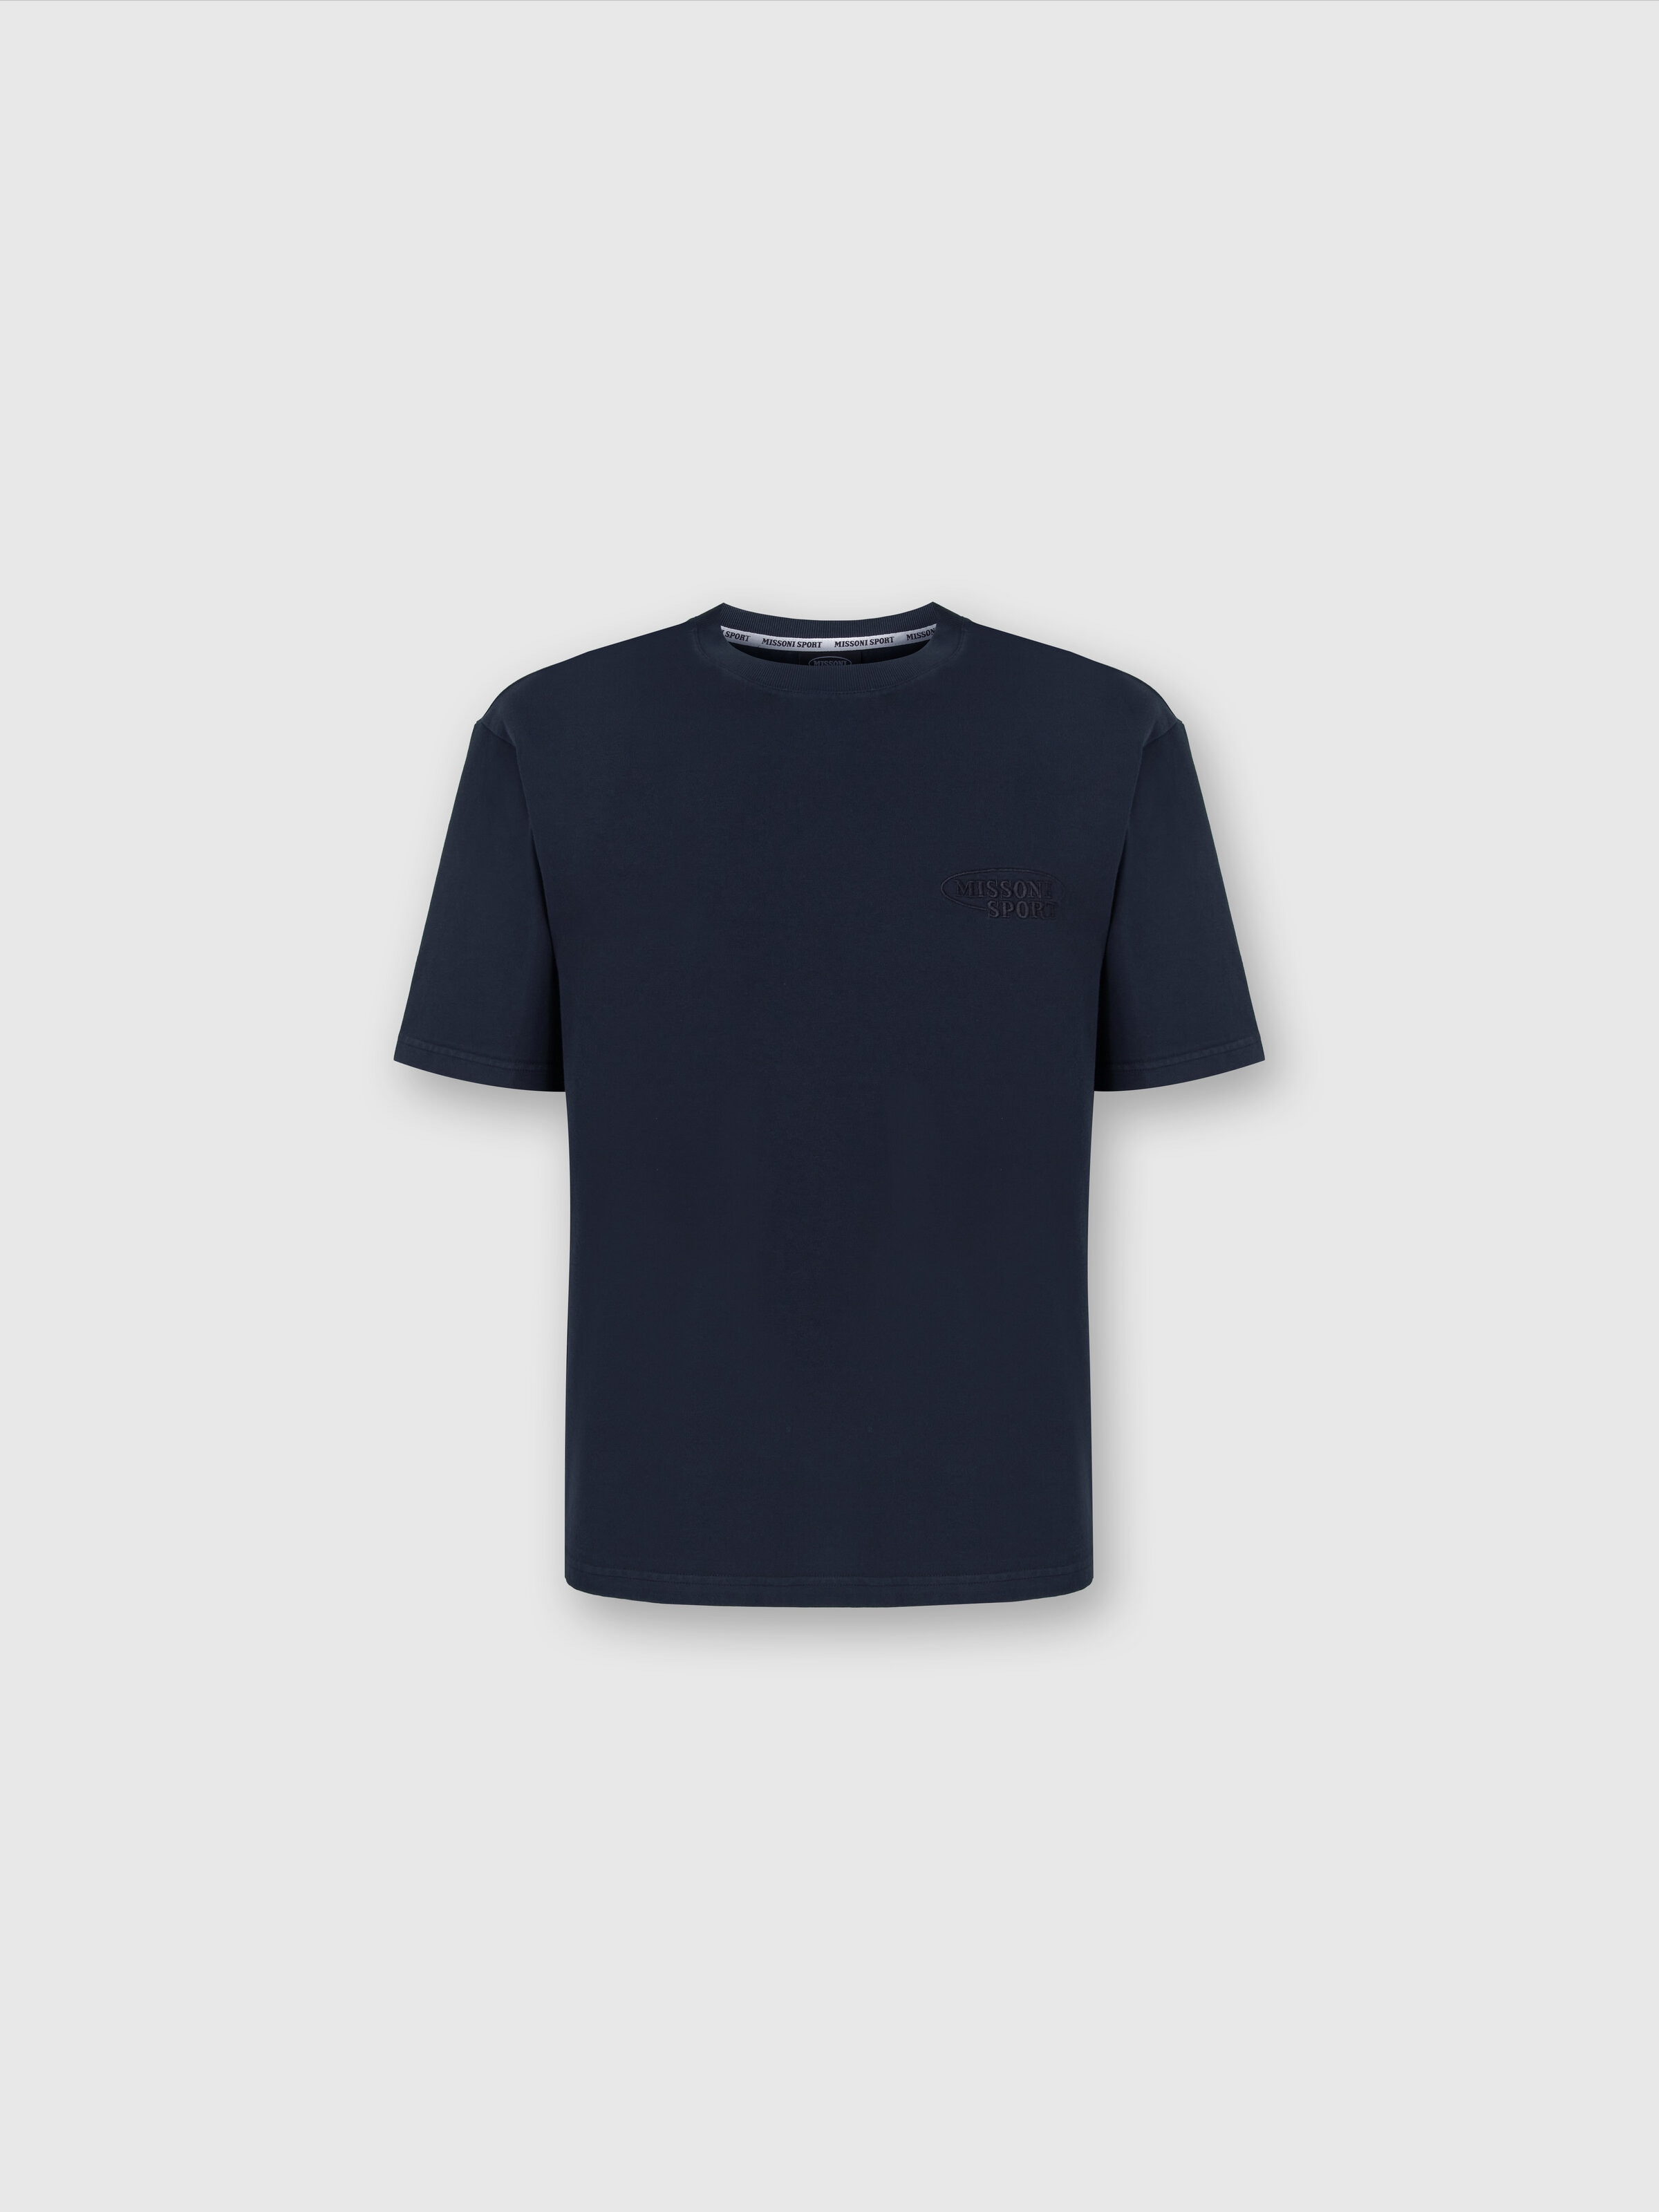 Baumwoll-T-Shirt mit Rundhalsausschnitt und Logo, Marineblau  - 0